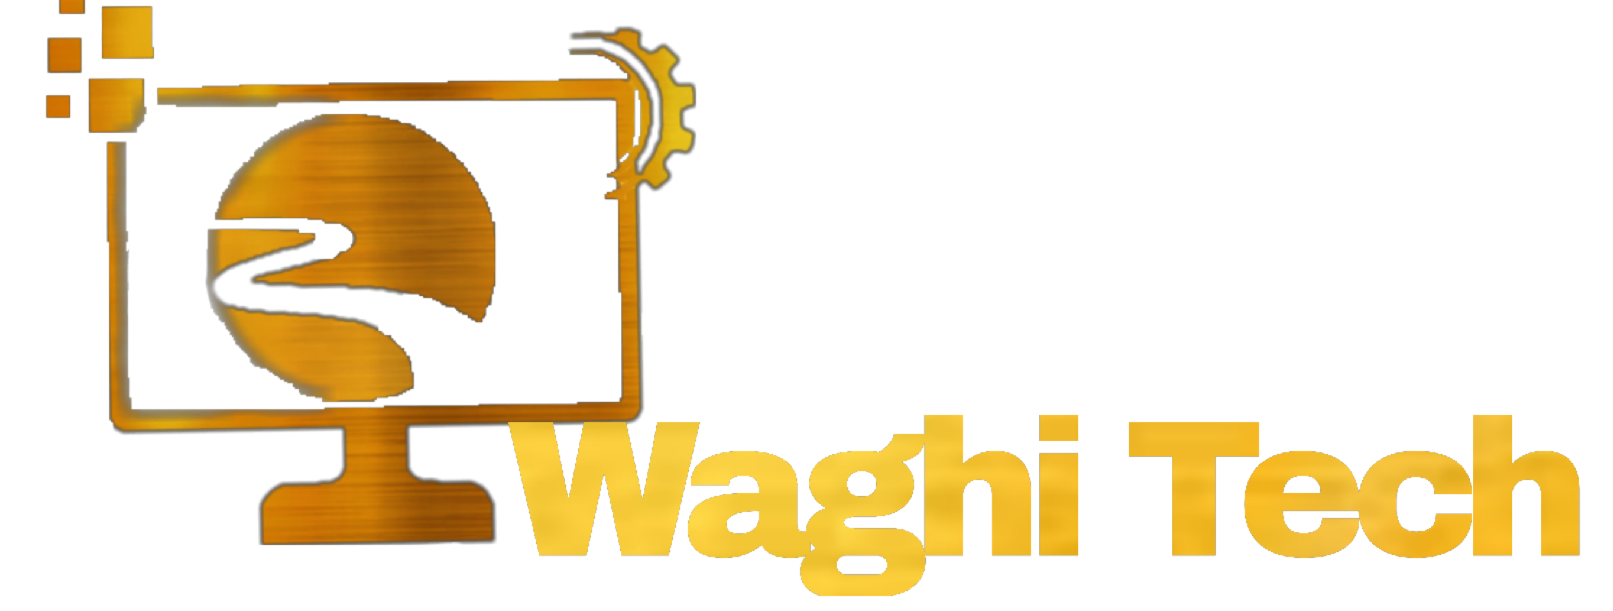 company Description Waghi Tech